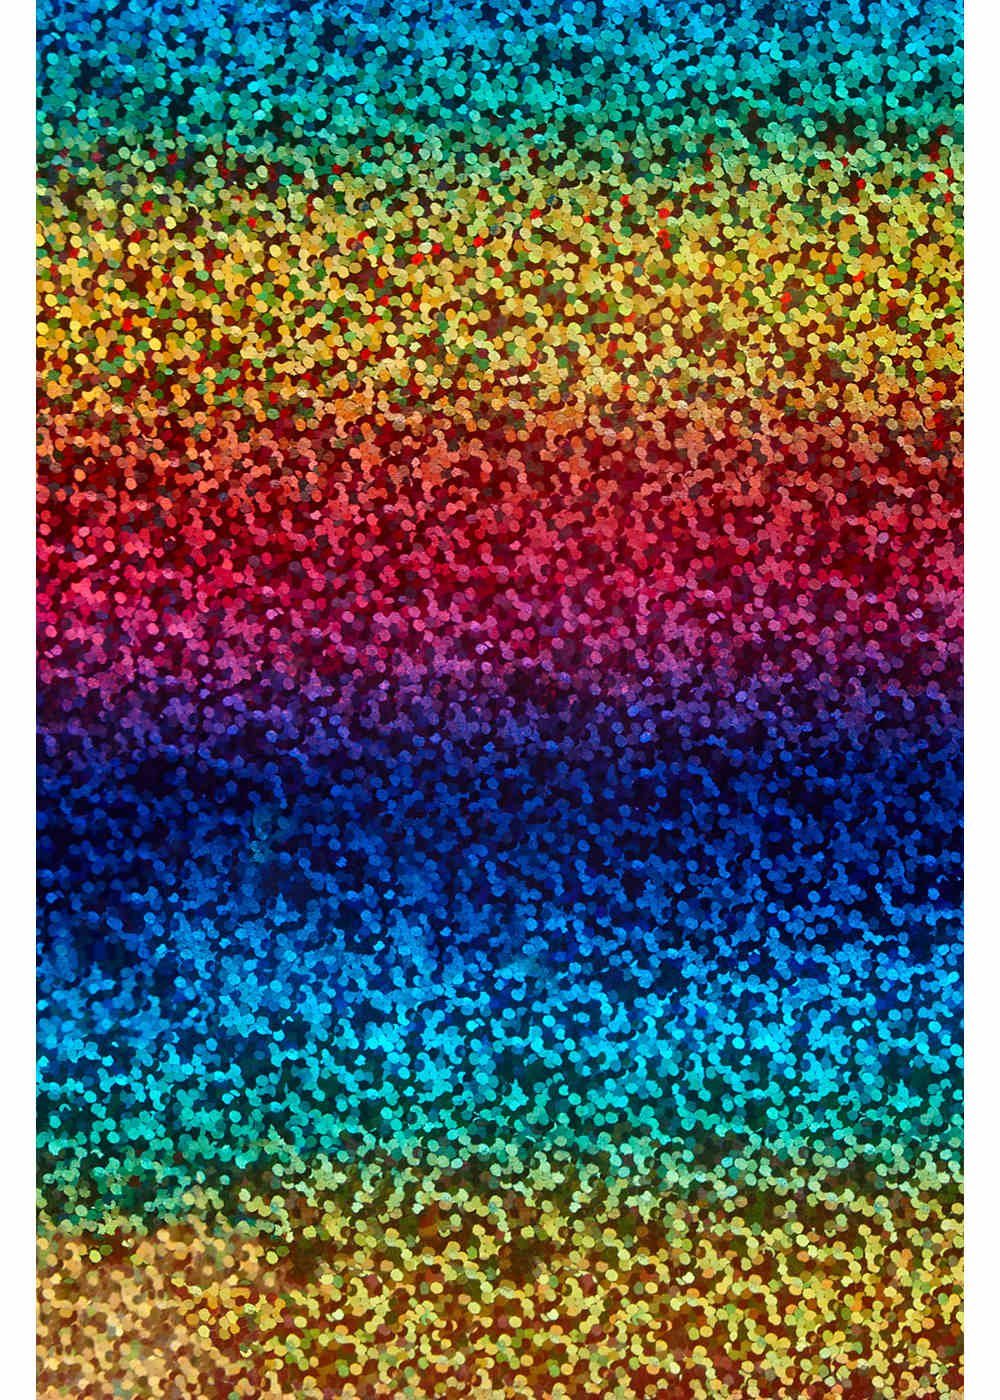 Transparentpapier Schimmer, A4 Regenbogen Holografische Effekt Transferfolie, Hilltop